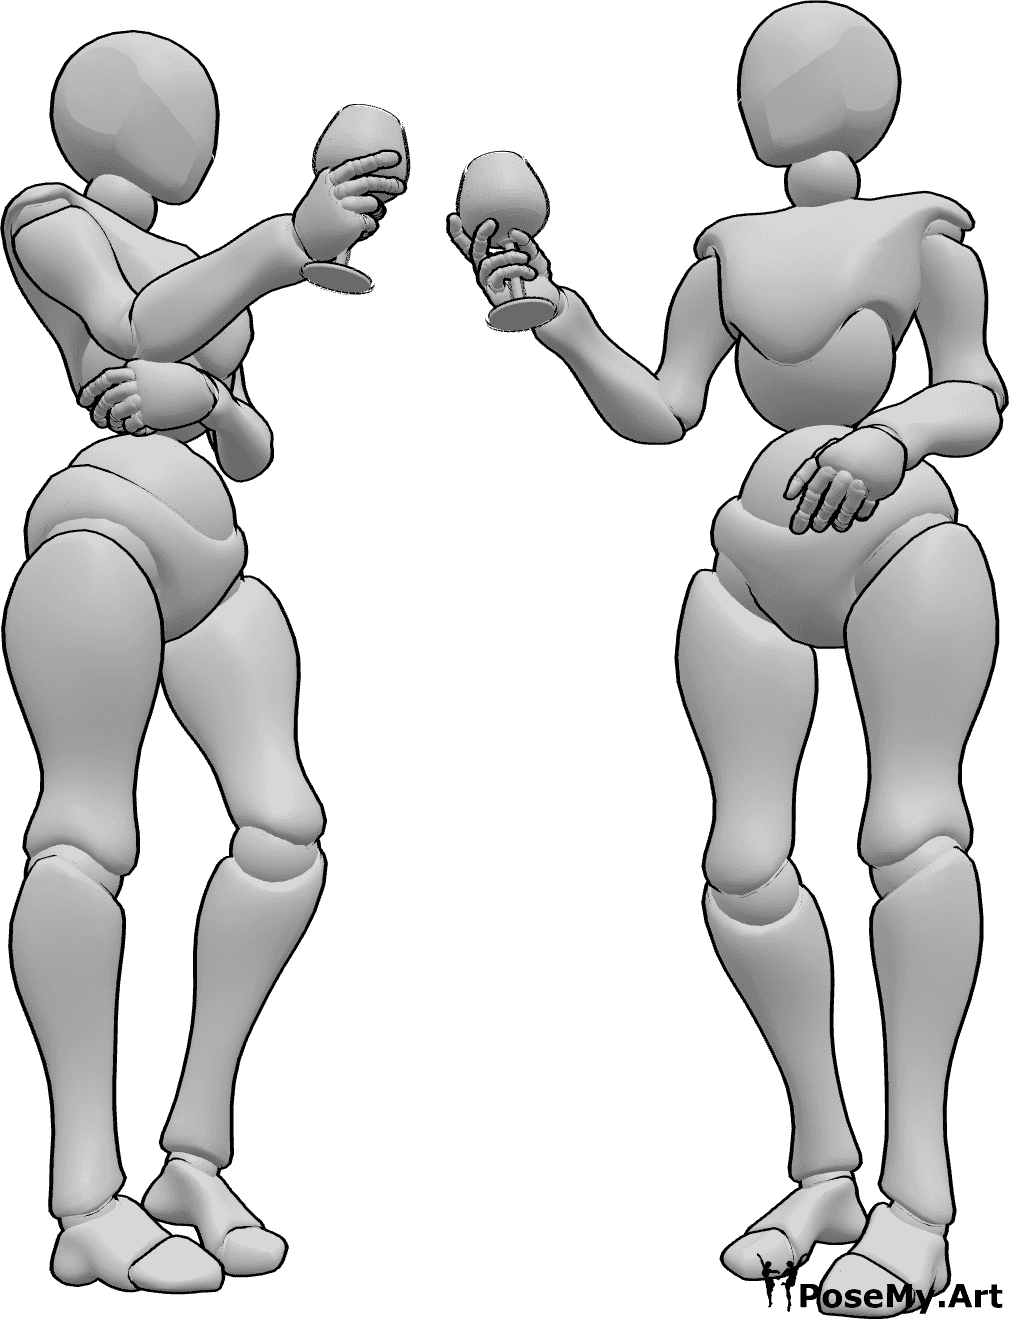 Posen-Referenz- Toasting-Pose der Frauen - Zwei Frauen stehen und stoßen an, bevor sie trinken, trinken Referenz